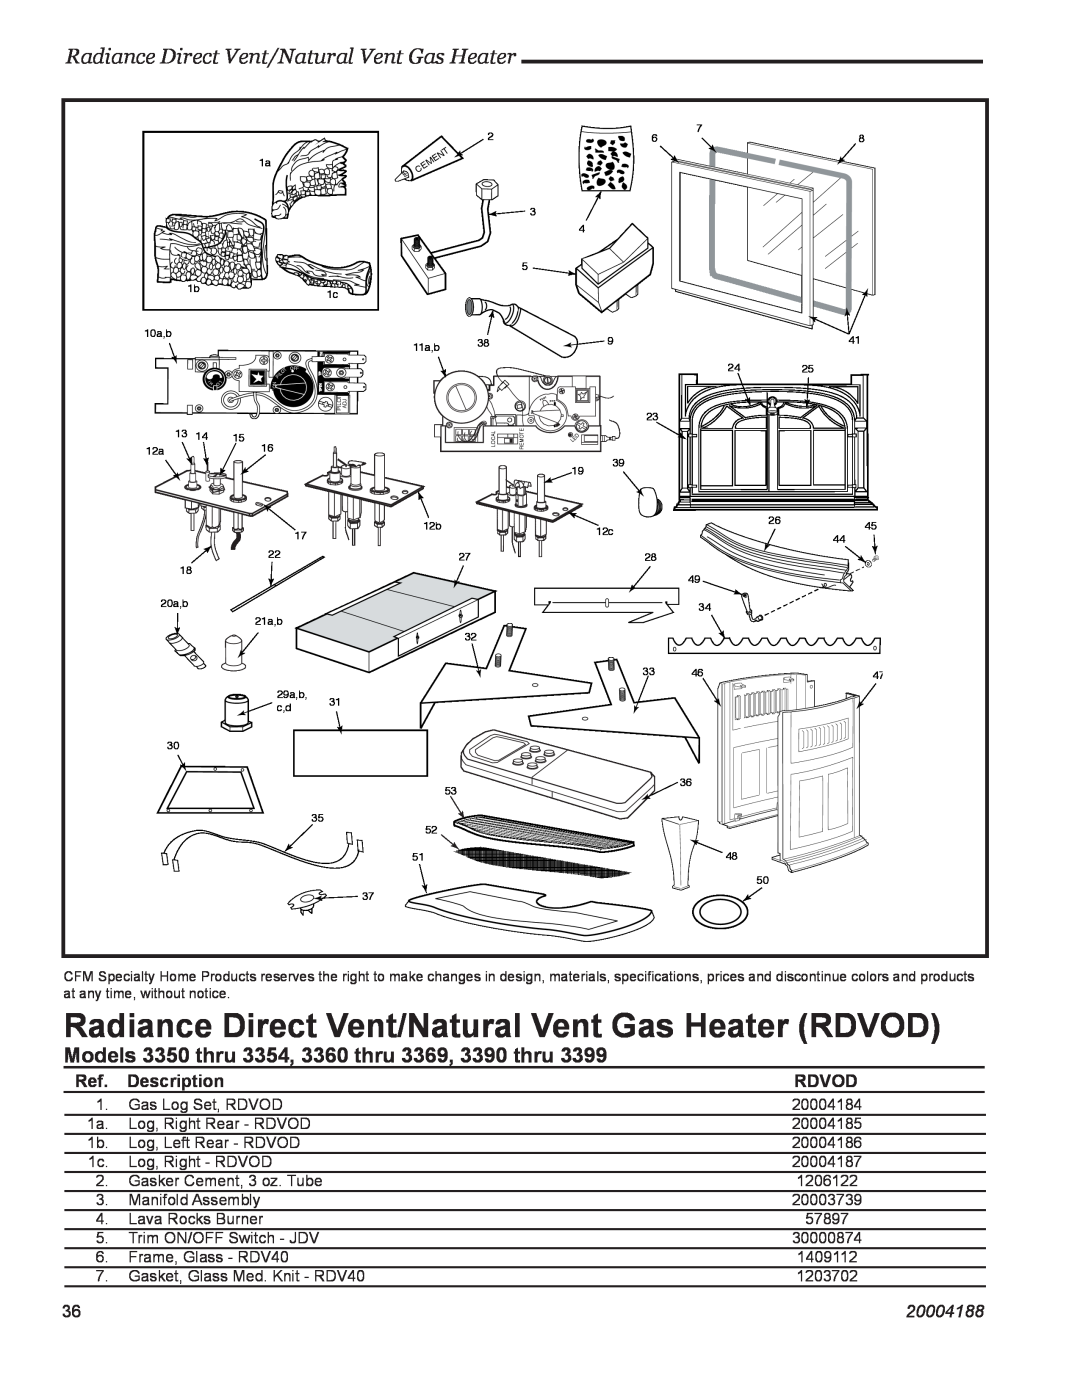 Vermont Casting RDVOD 3399 Models 3350 thru 3354, 3360 thru 3369, 3390 thru, Radiance Direct Vent/Natural Vent Gas Heater 